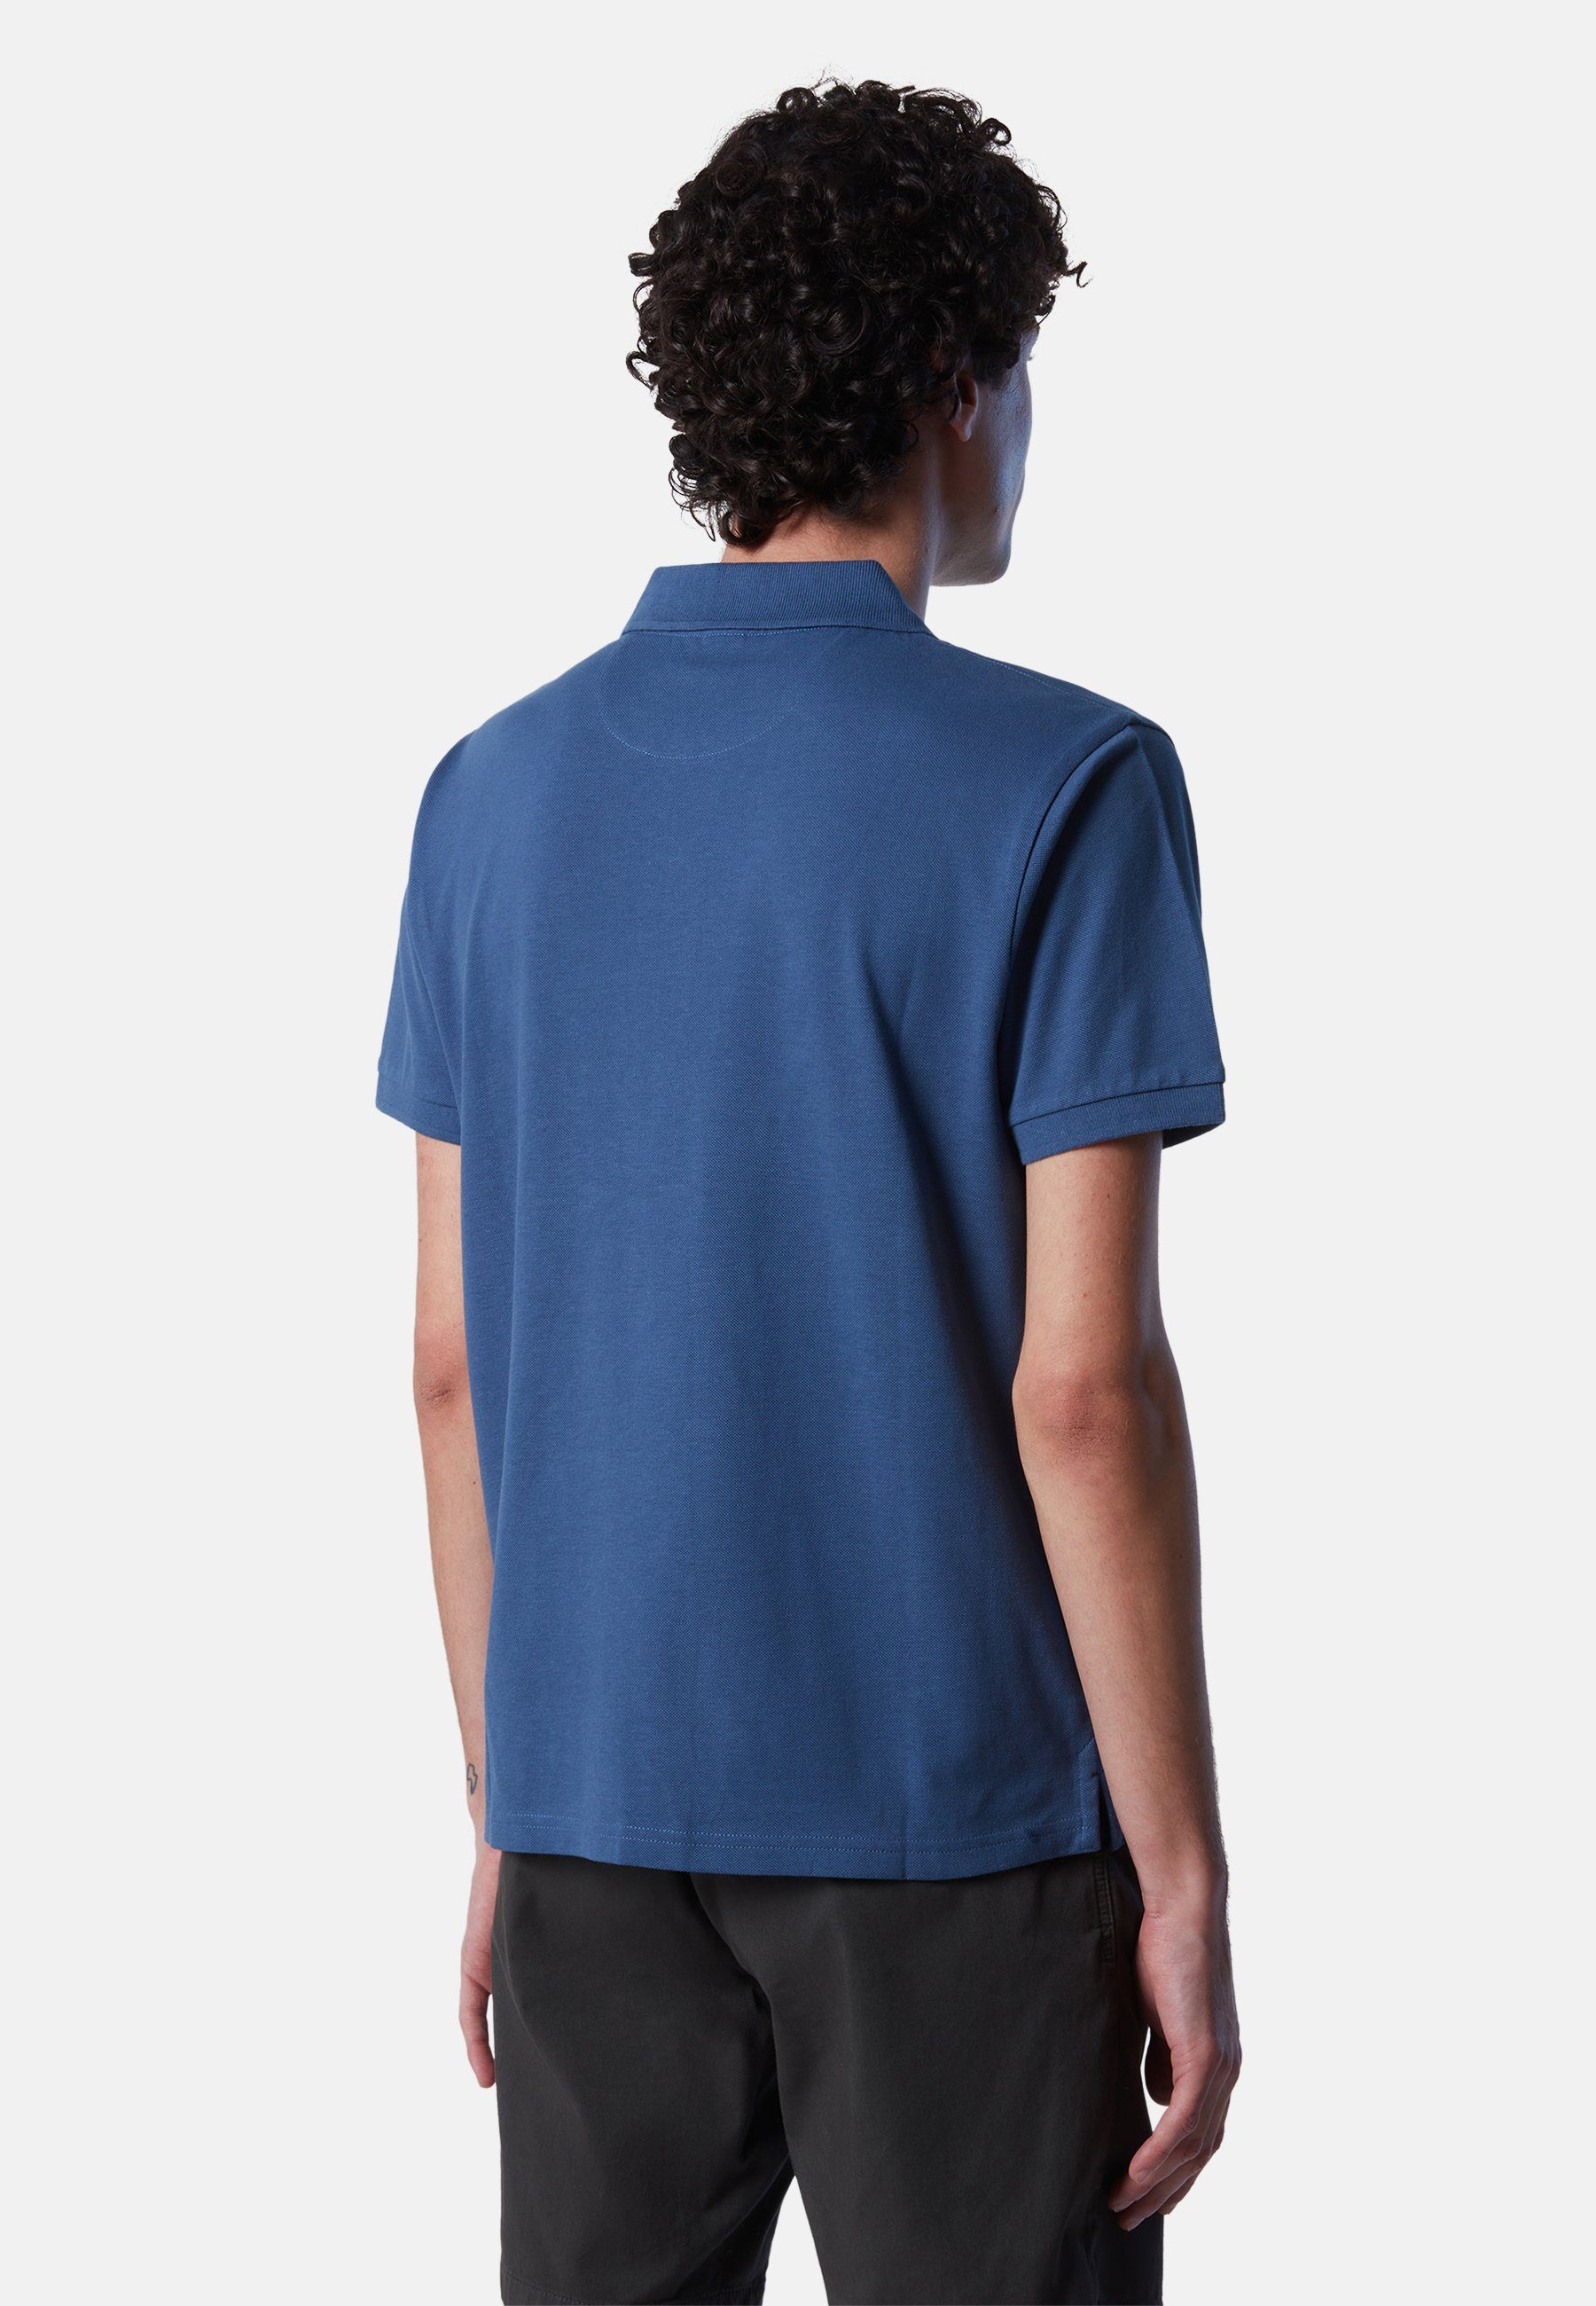 North klassischem Design mit Poloshirt Sails Poloshirt BLUE aus Bio-Baumwolle